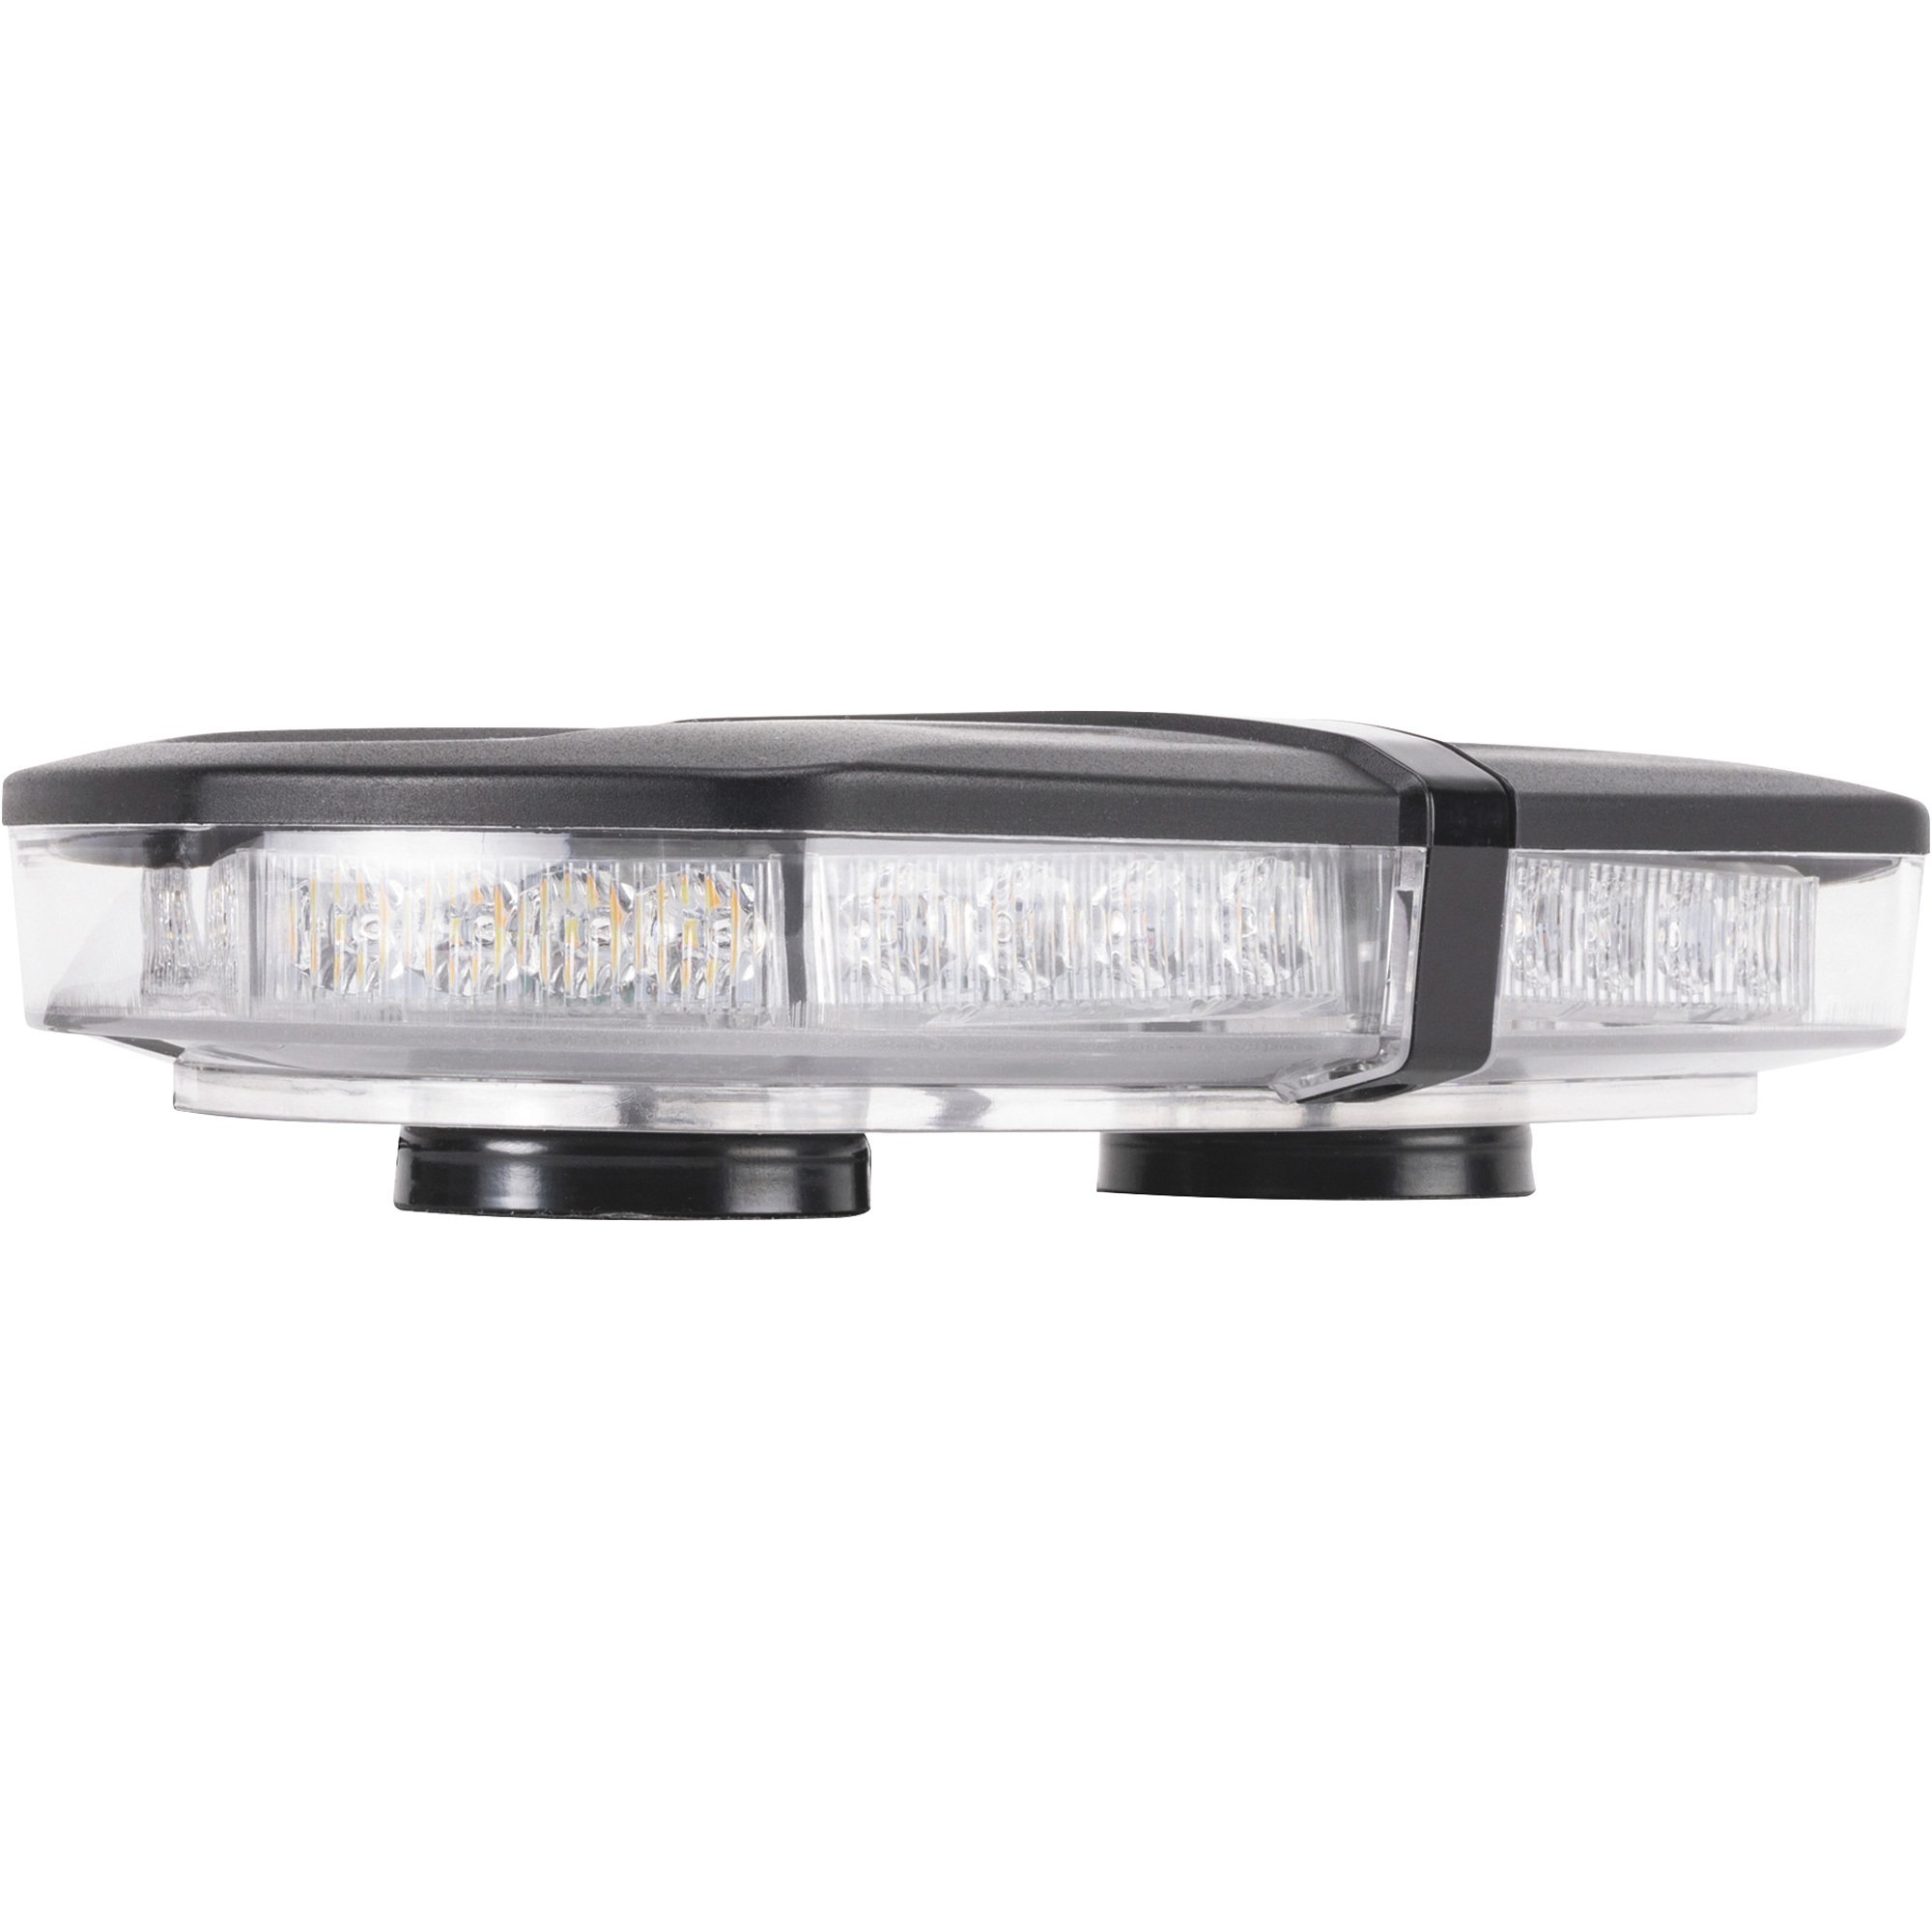 Blazer 12V LED Class 2 Micro Warning Light Bar — White/Amber, 9